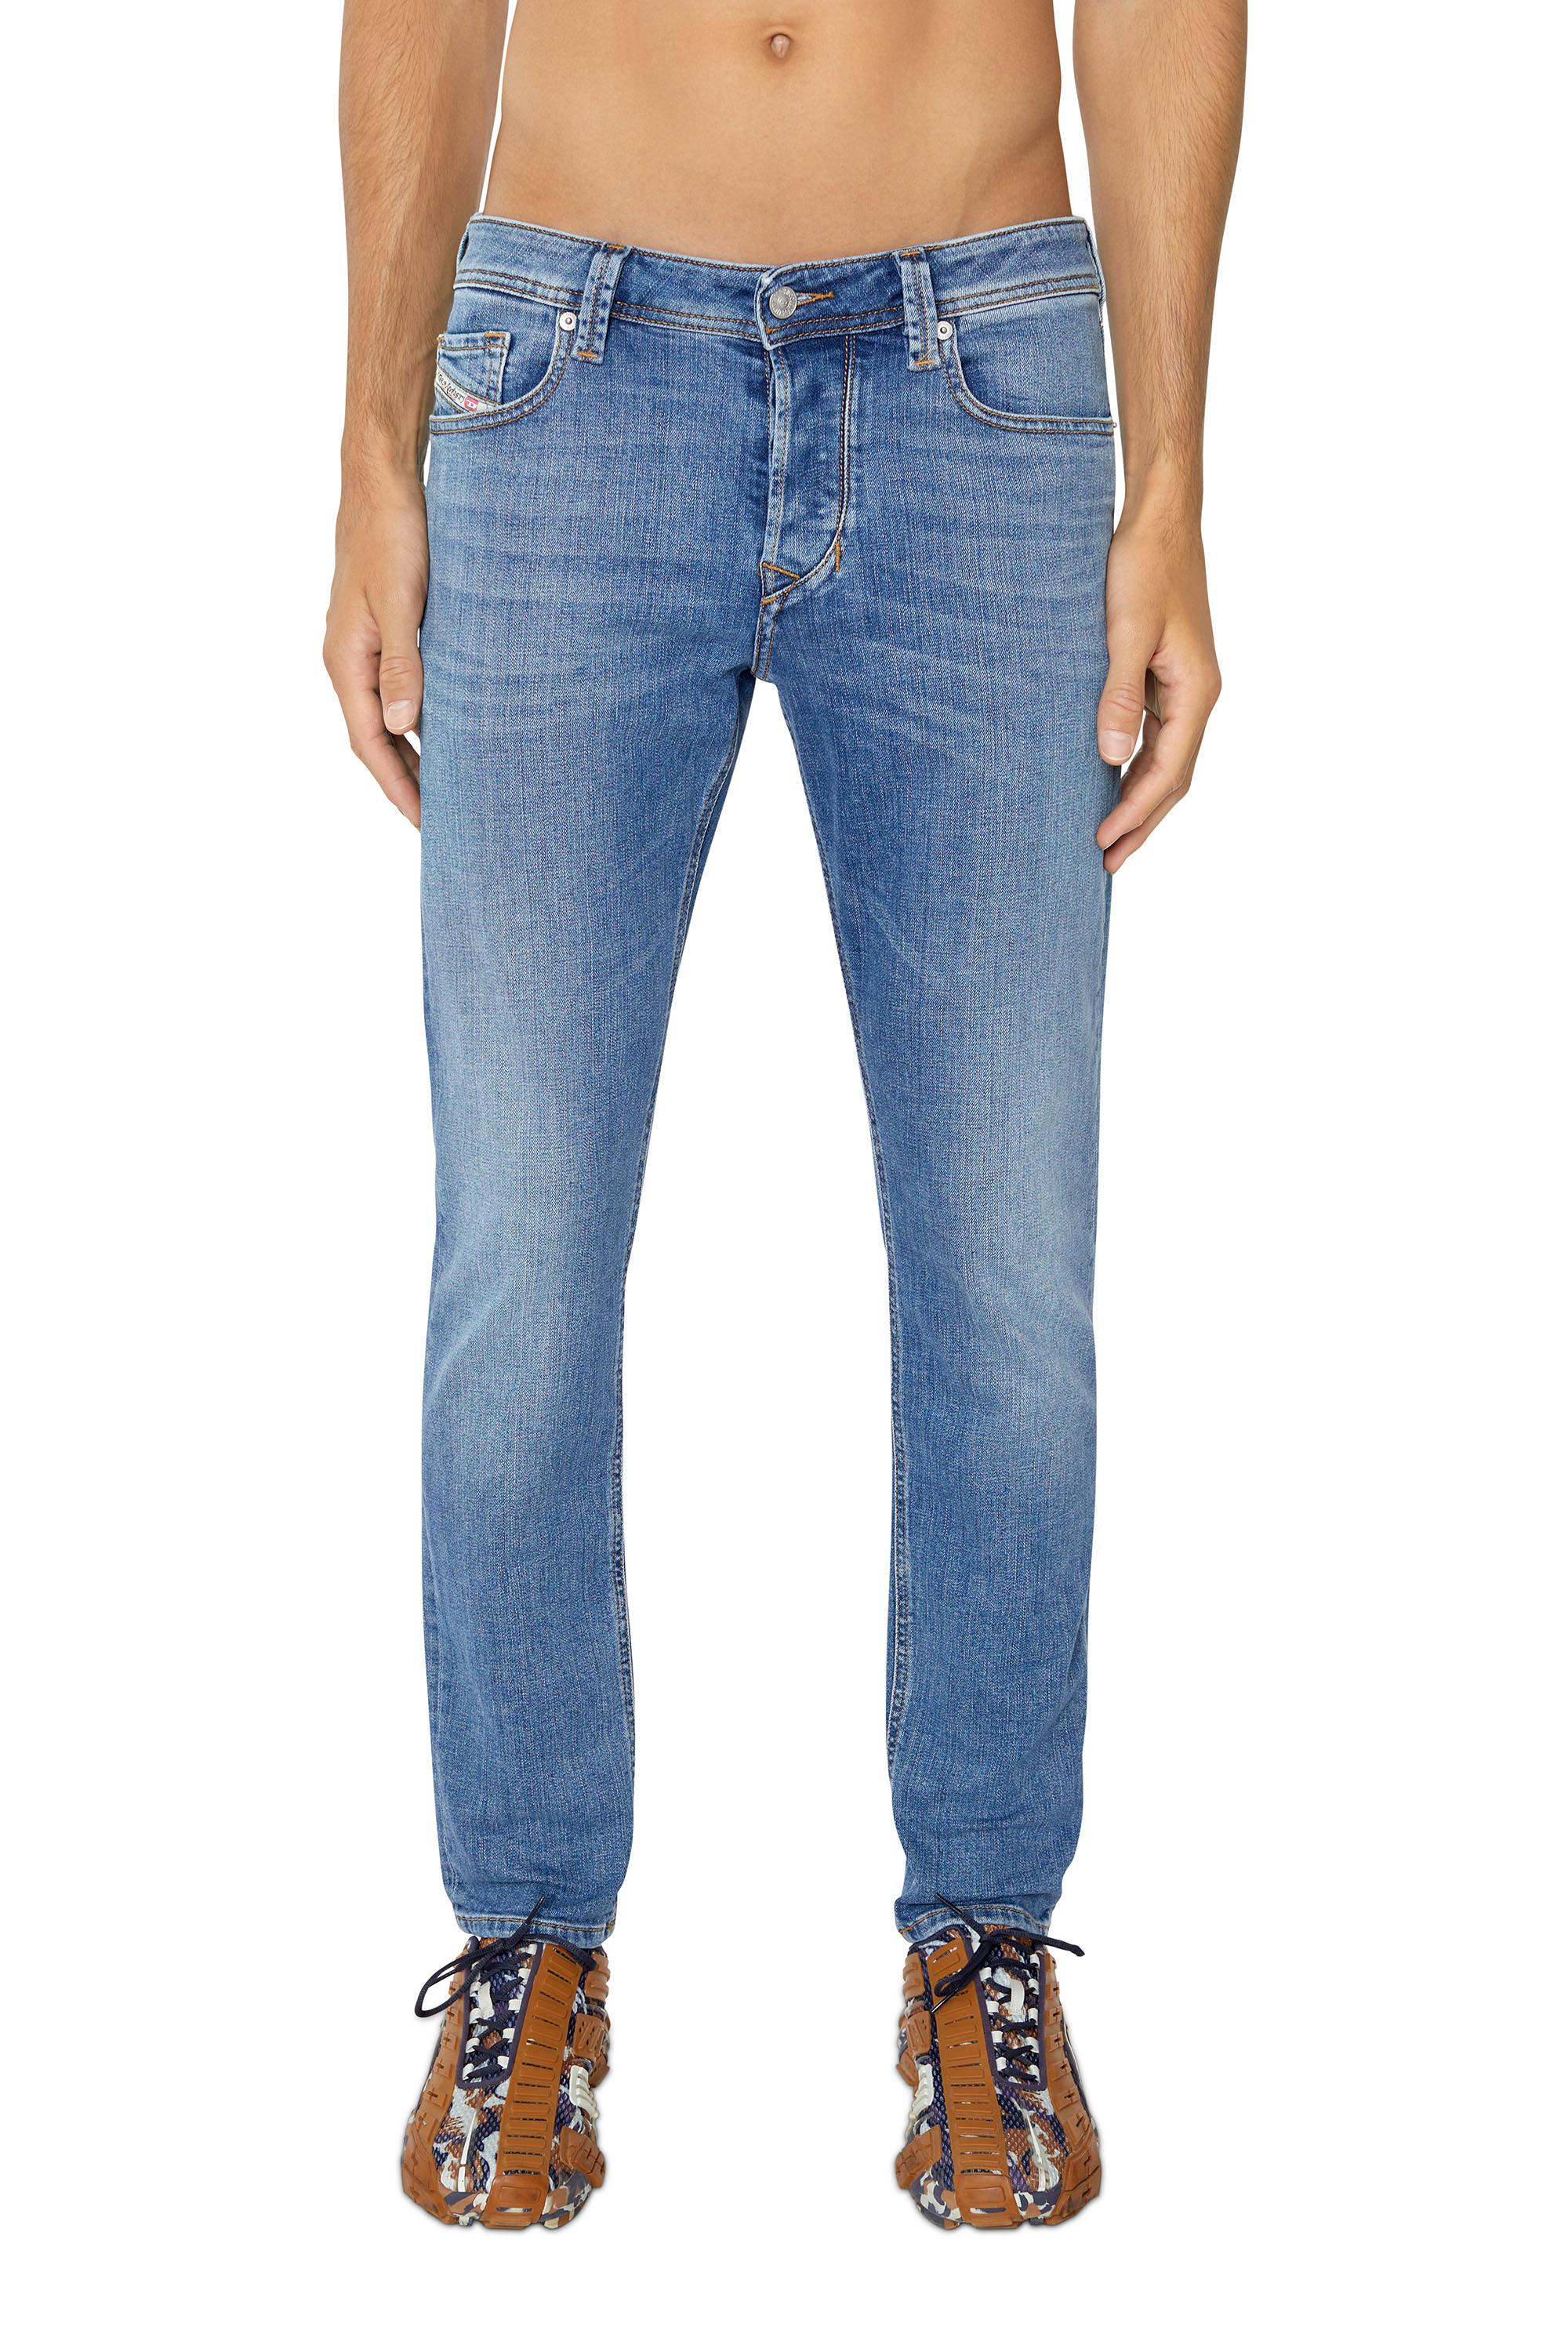 Men's Jeans: Skinny, Tapered, Straight, Bootcut | Diesel